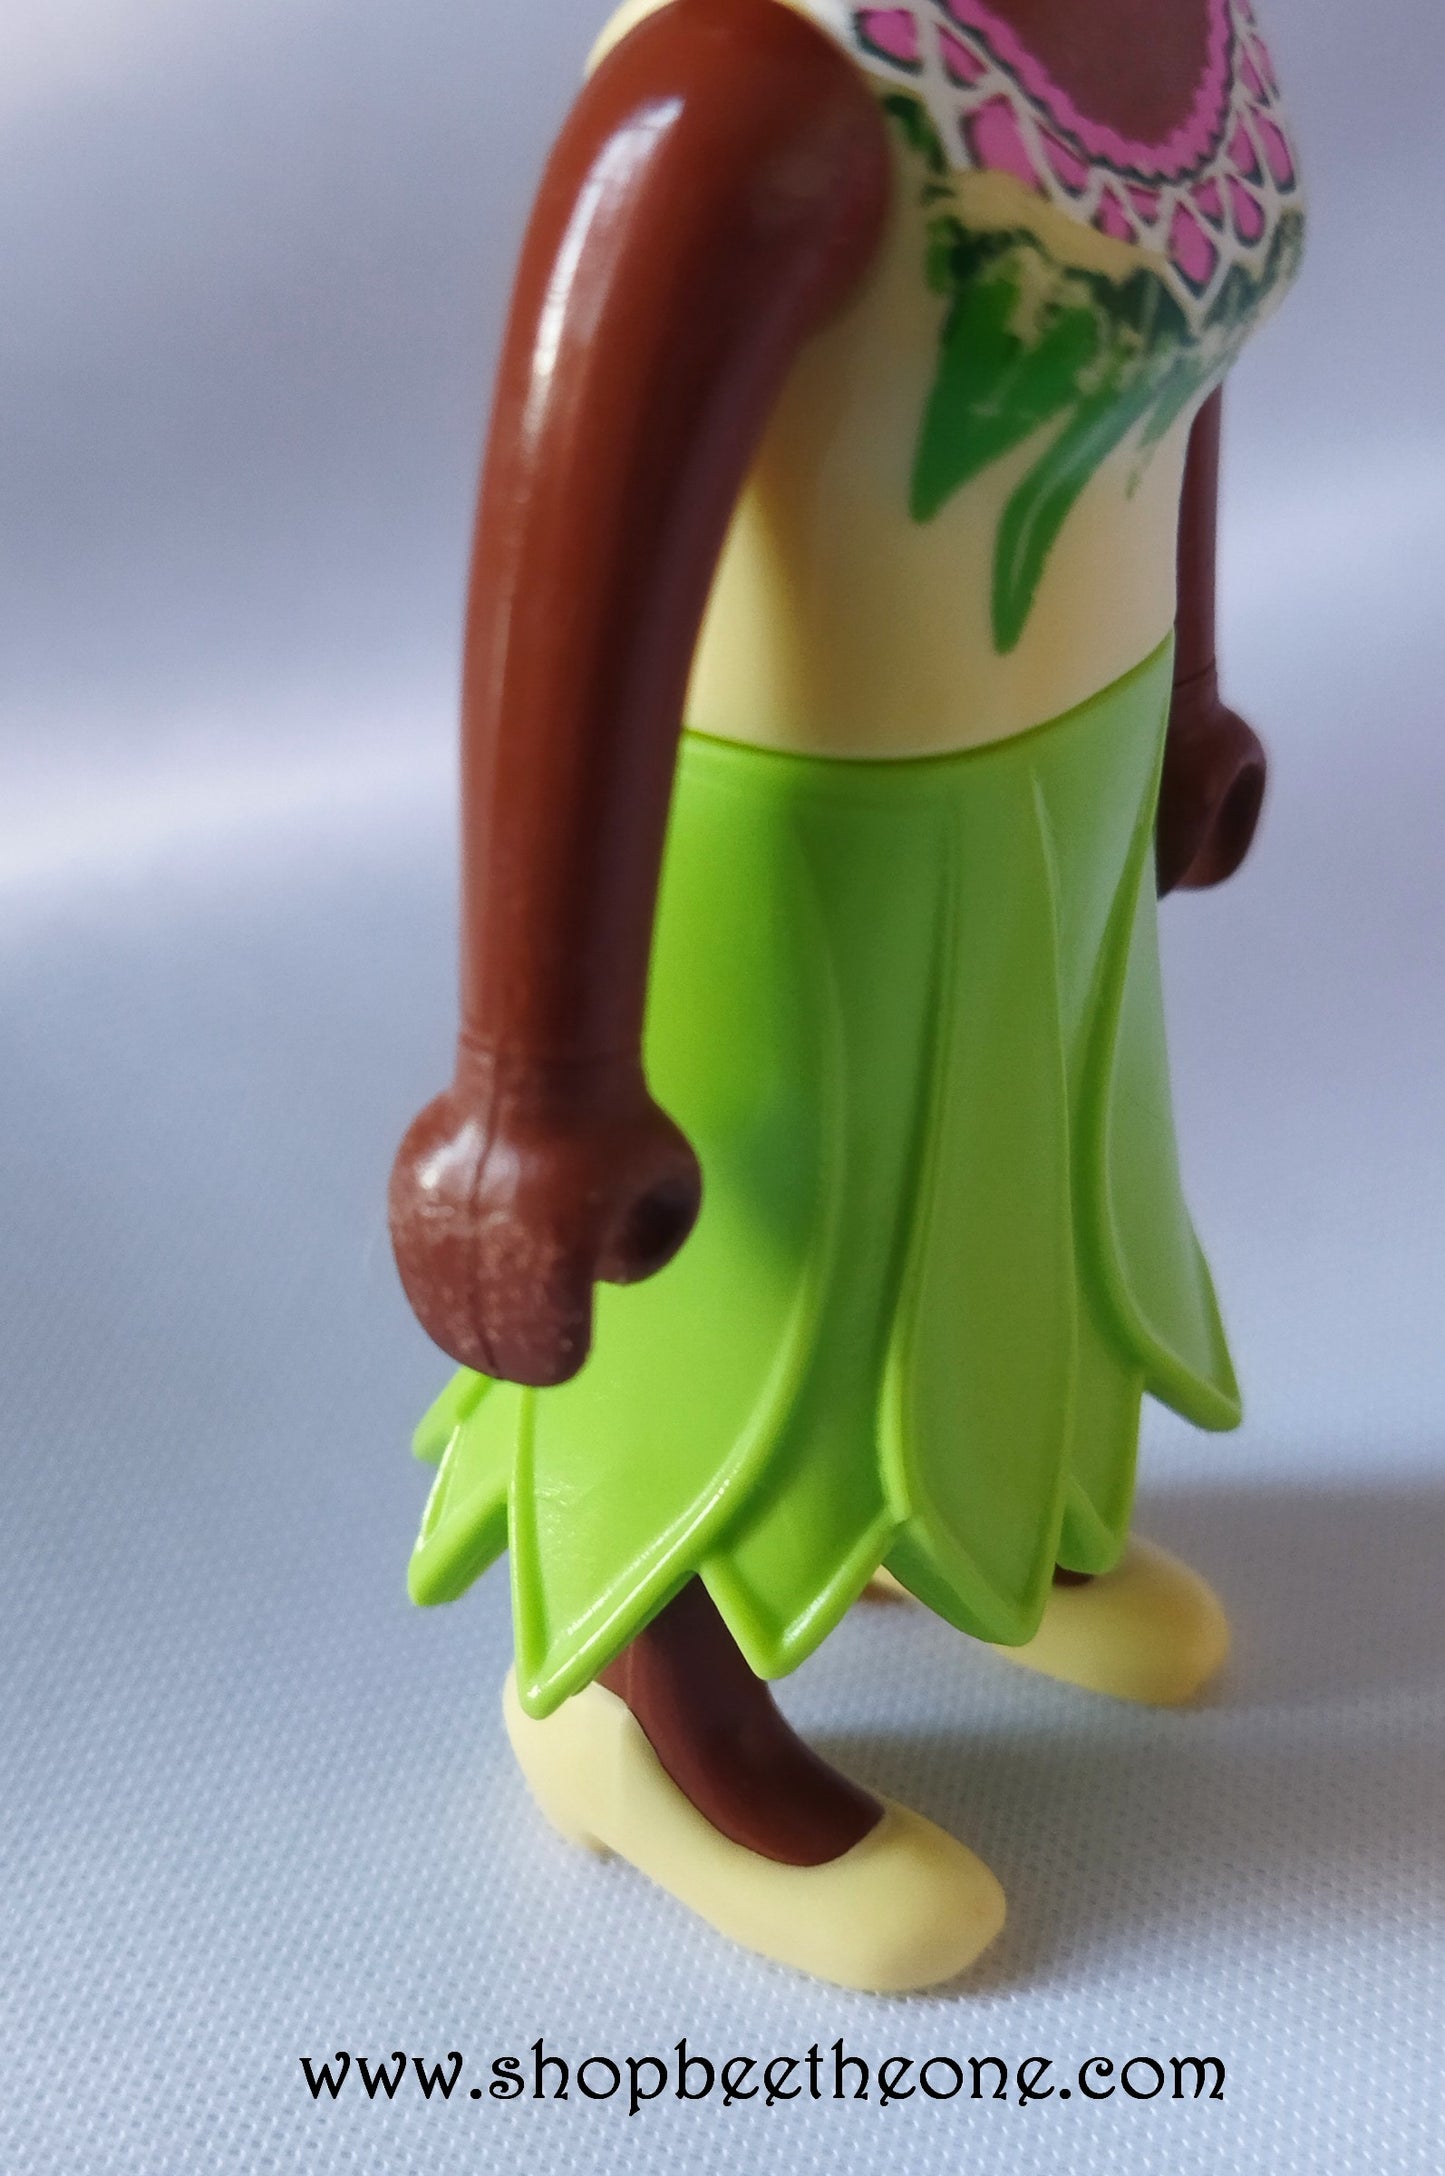 Collection Fées et Chevaliers - Playmobil/Quick 2015 - Figurine Klicky Fée verte et Fée rouge